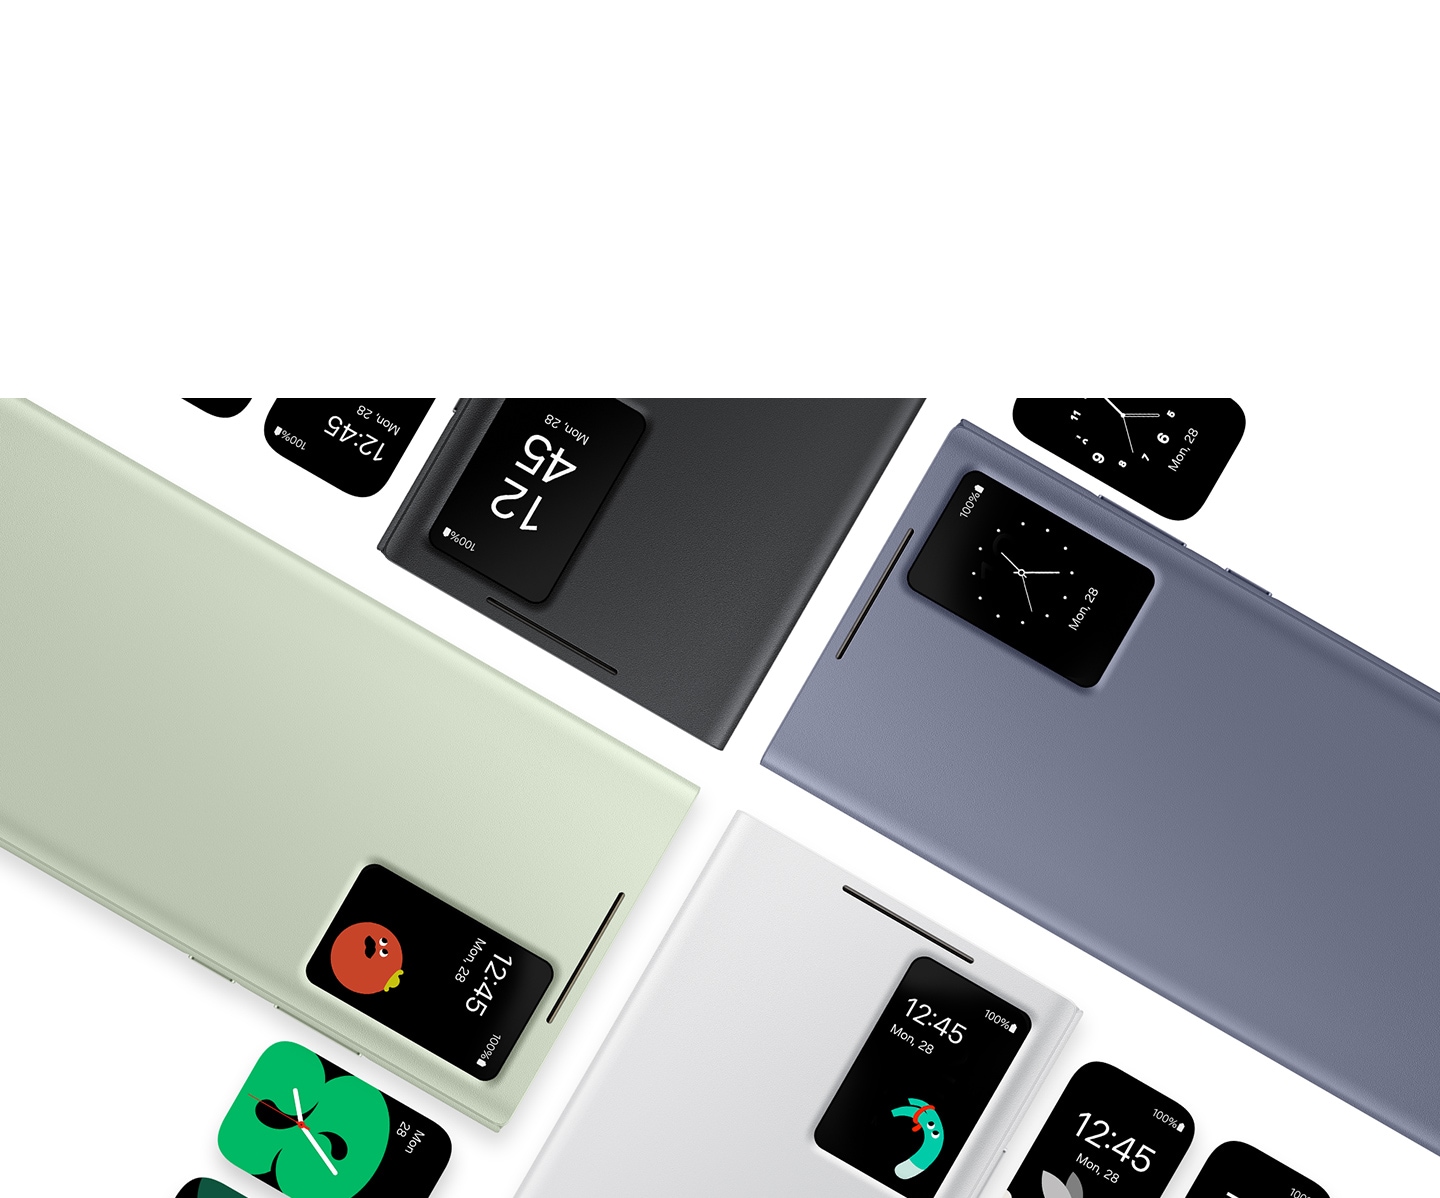 La funda movil Smart View Wallet en negro, verde claro, violeta oscuro y blanco aparece y está alineada paralelamente entre sí. La ventana S-View resalta la hora y fecha del samartphone Galaxy S24 sin necesidad de abrir la tapa.